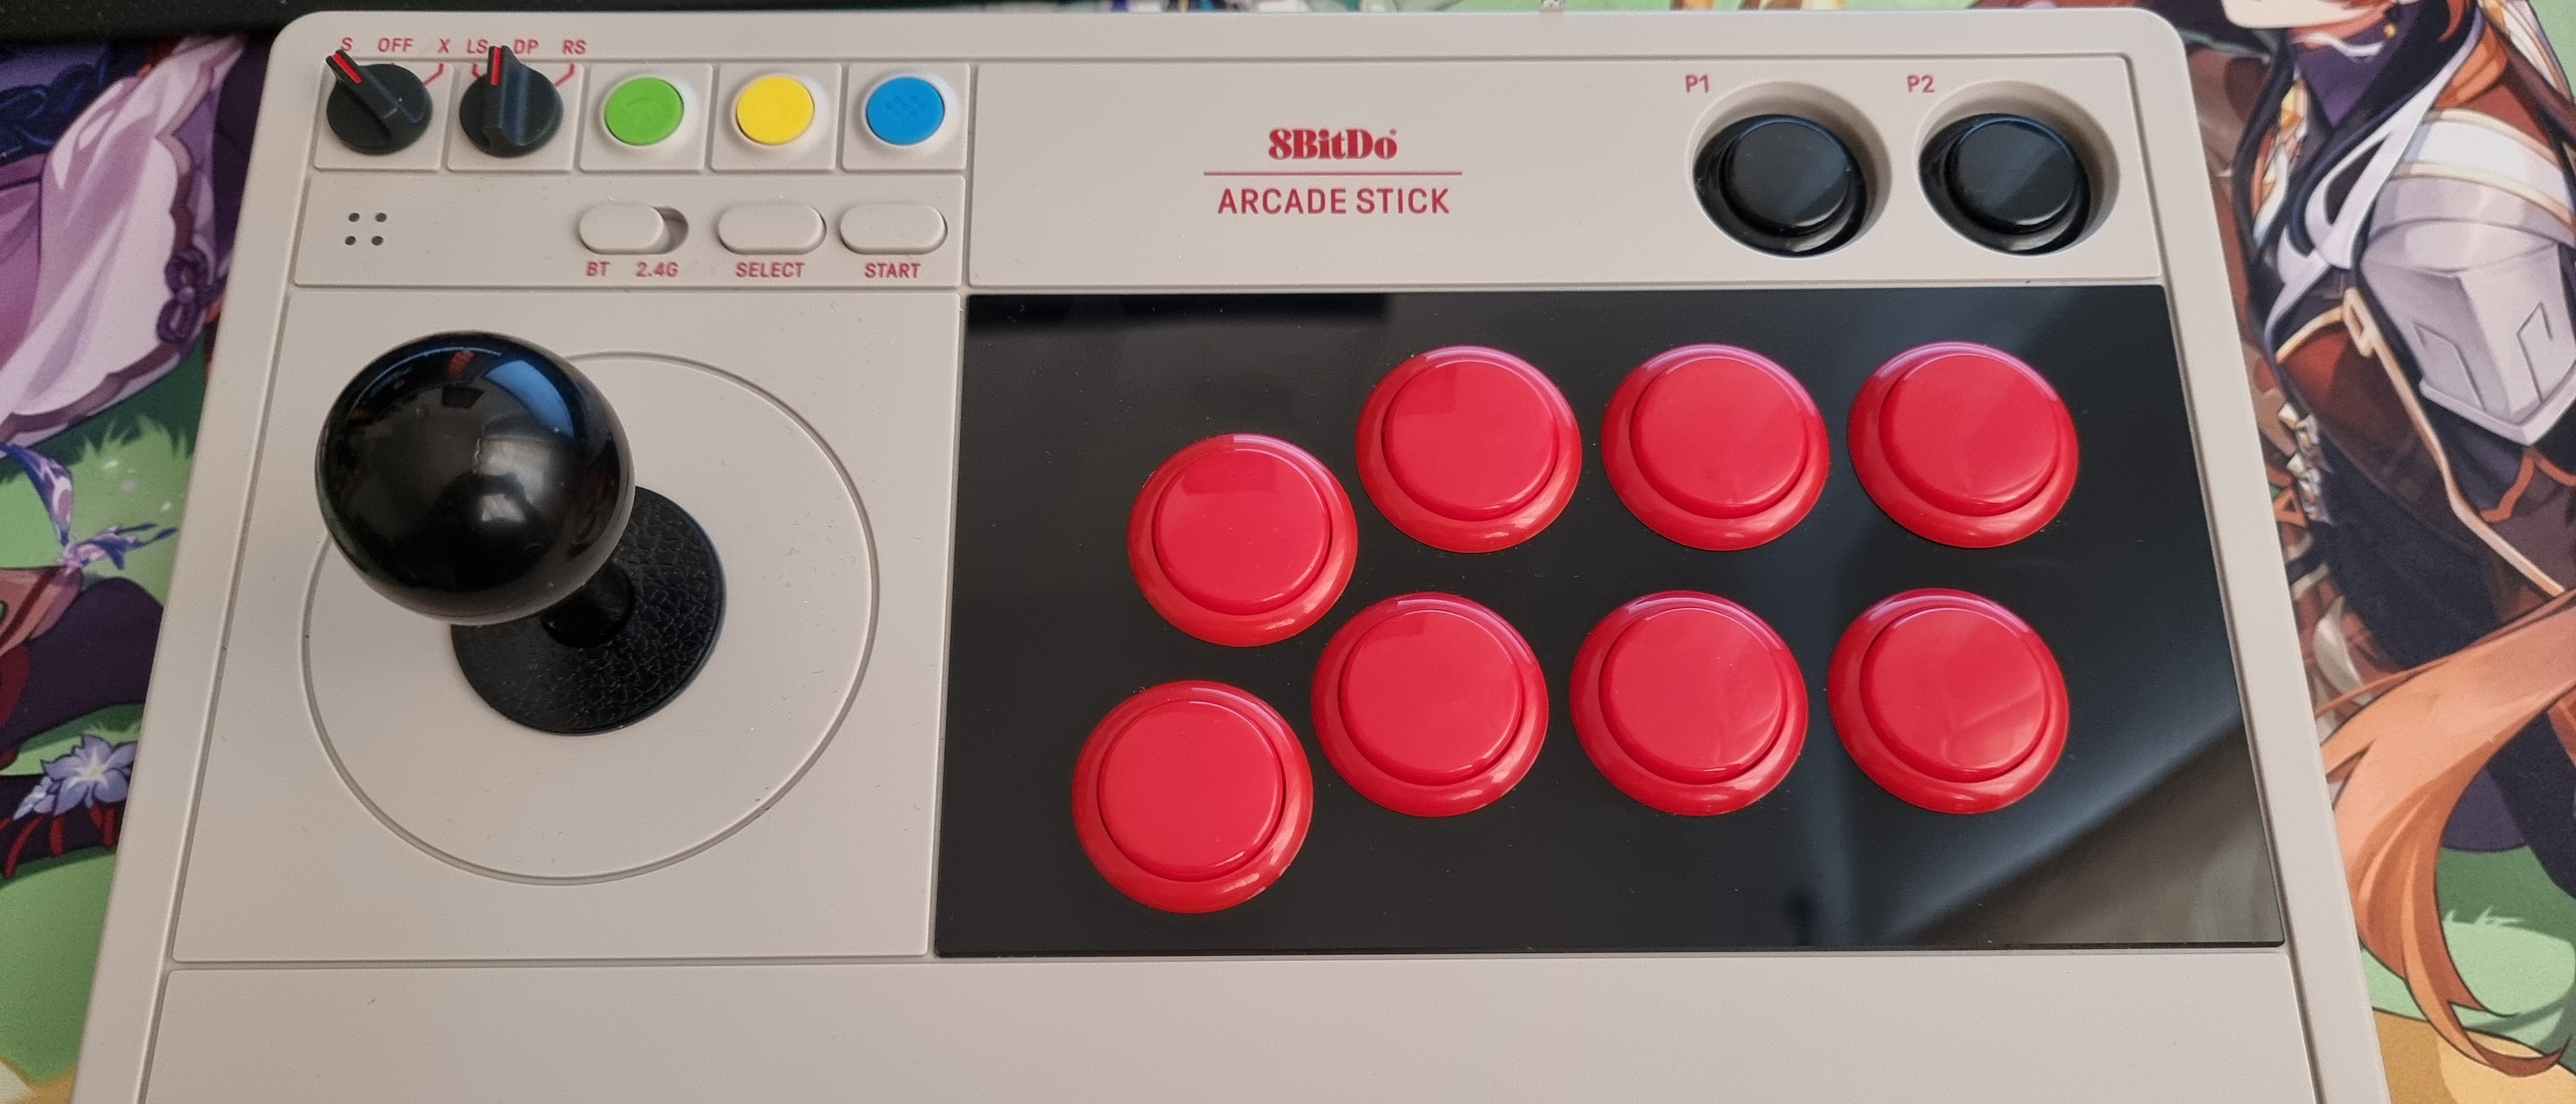 8BitDo Arcade Stick Review - The Arcade Stick